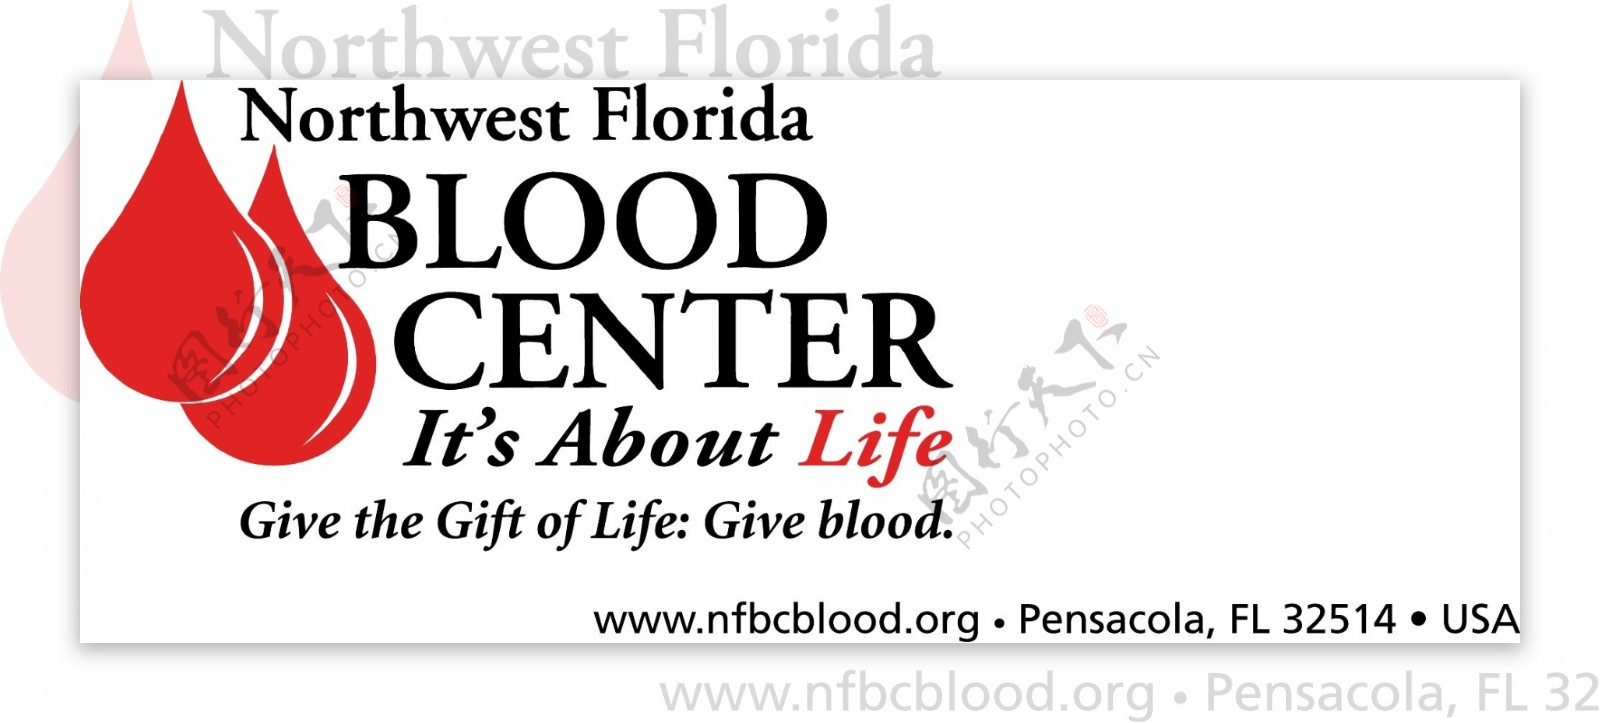 佛罗里达州西北部的血液中心